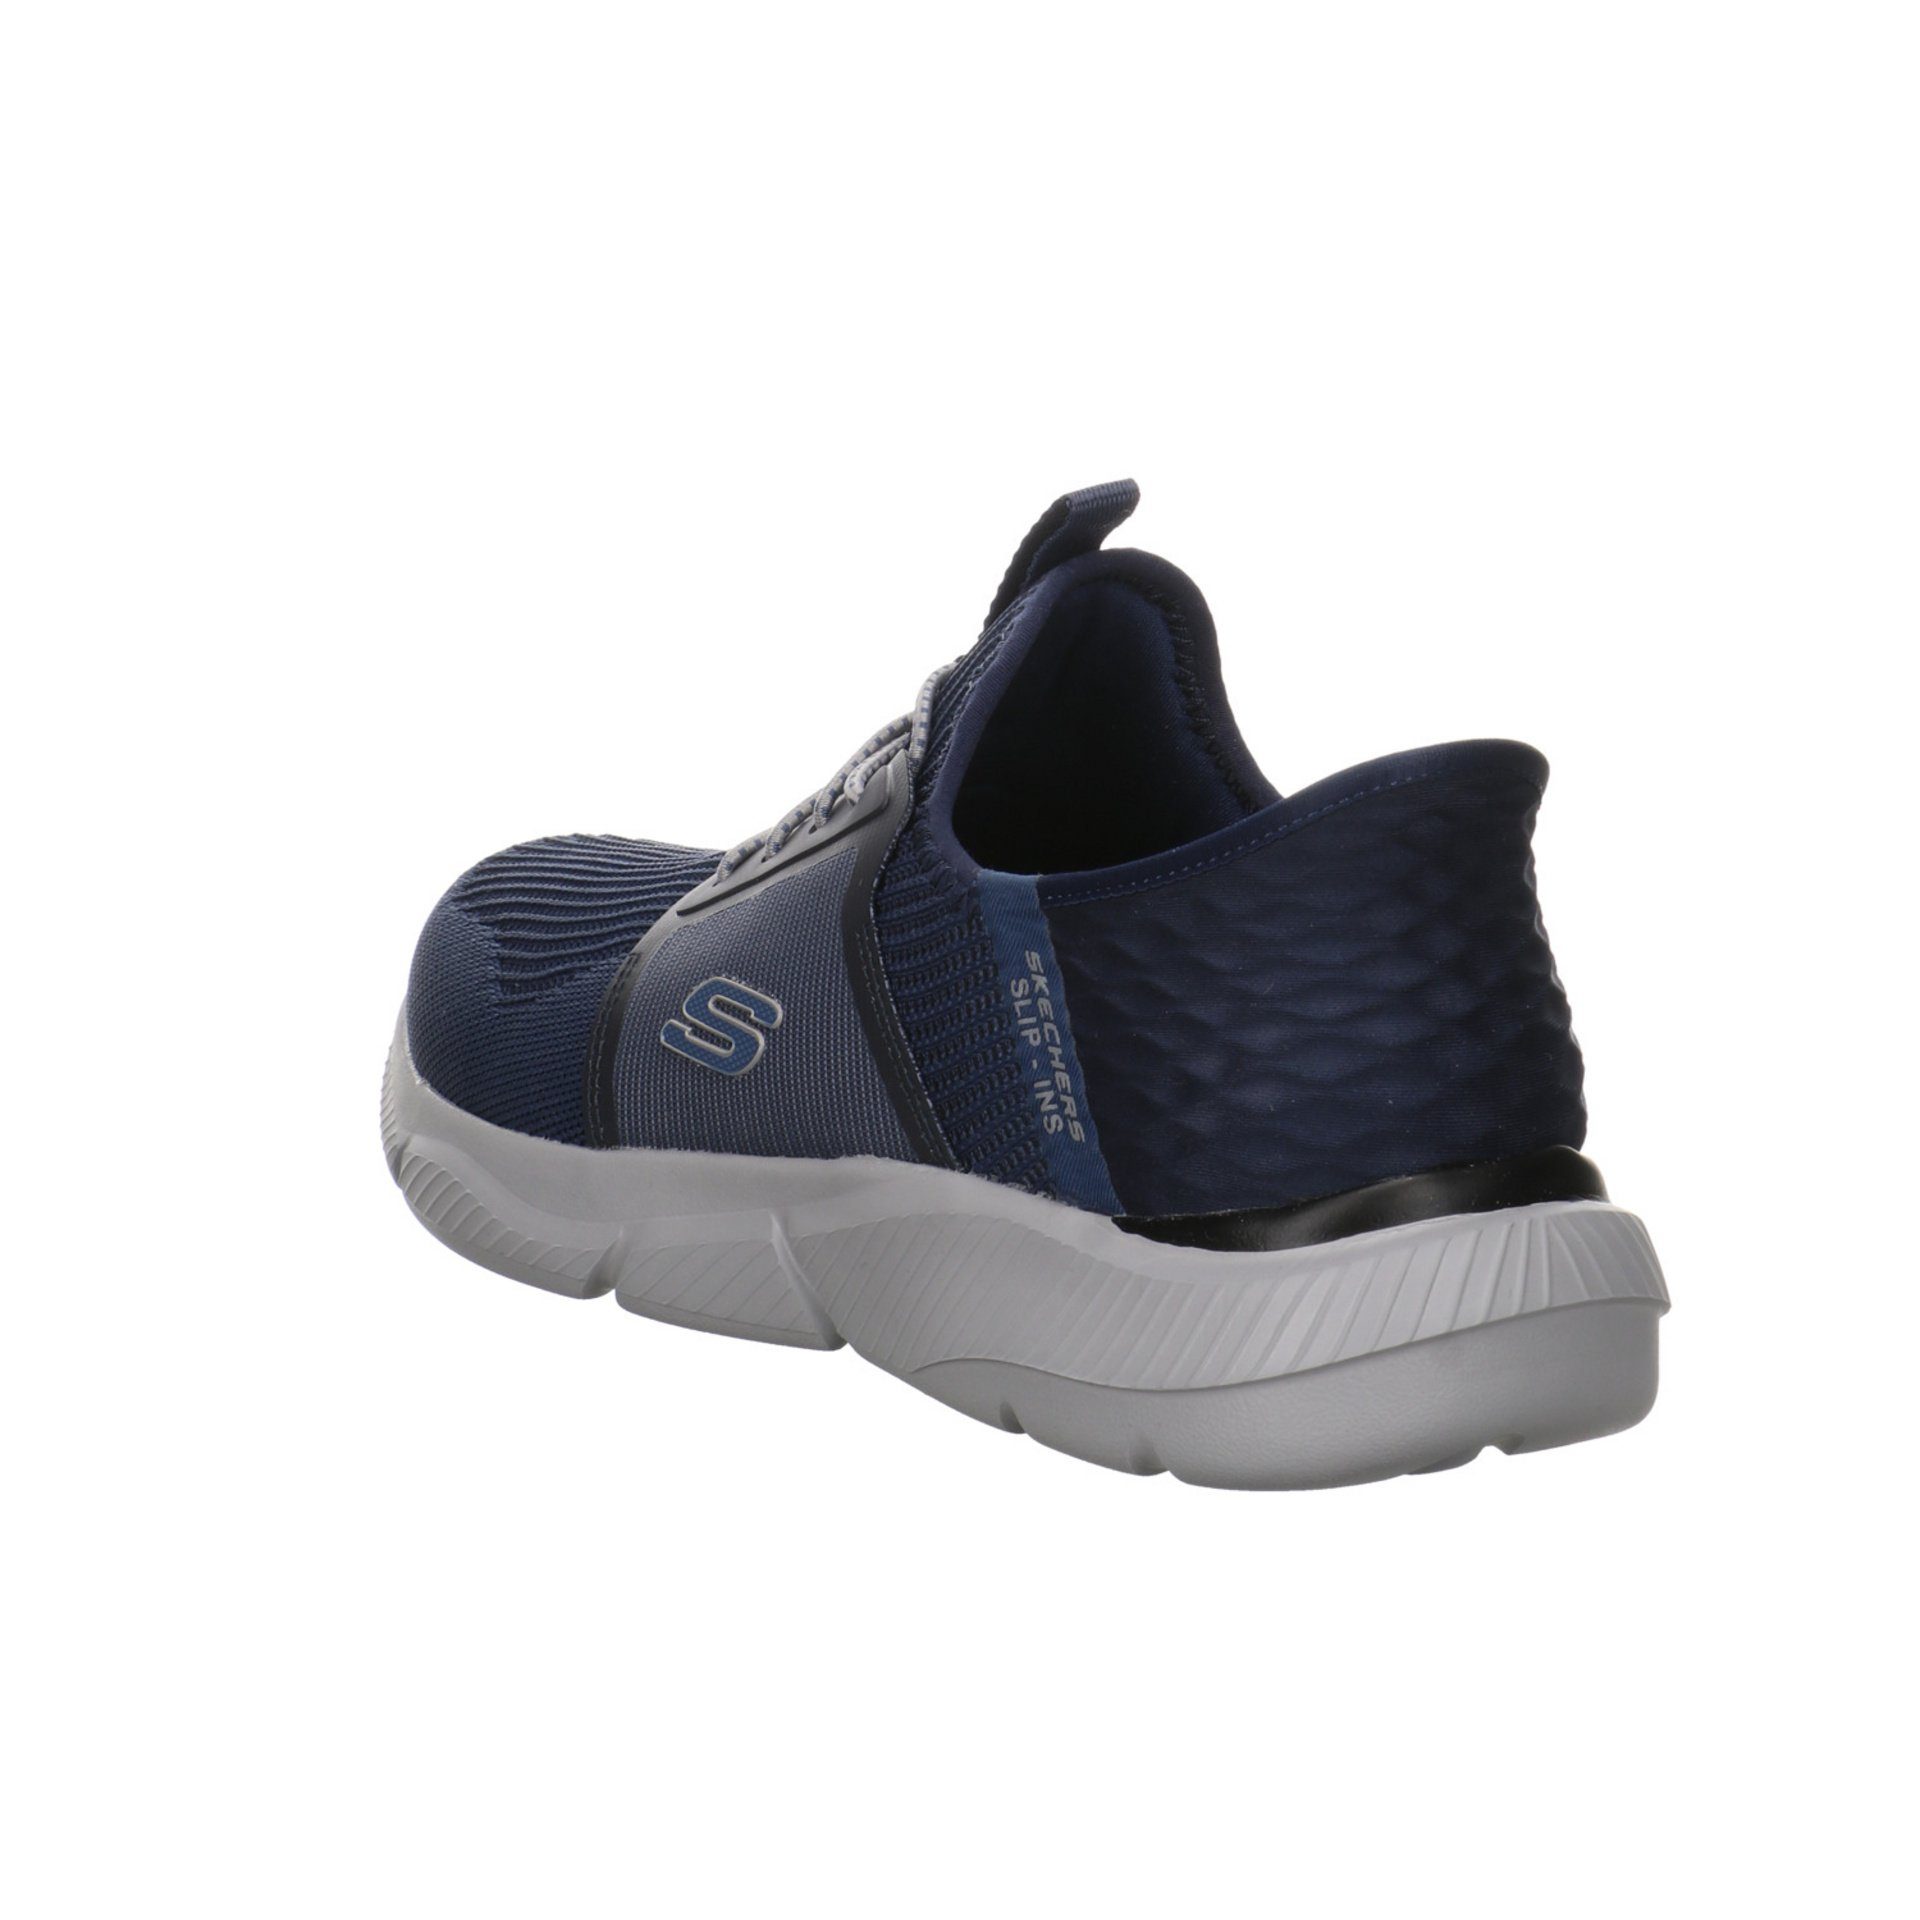 Herren Schuhe Slipper Synthetik Slip-On Sneaker Skechers dunkel blau